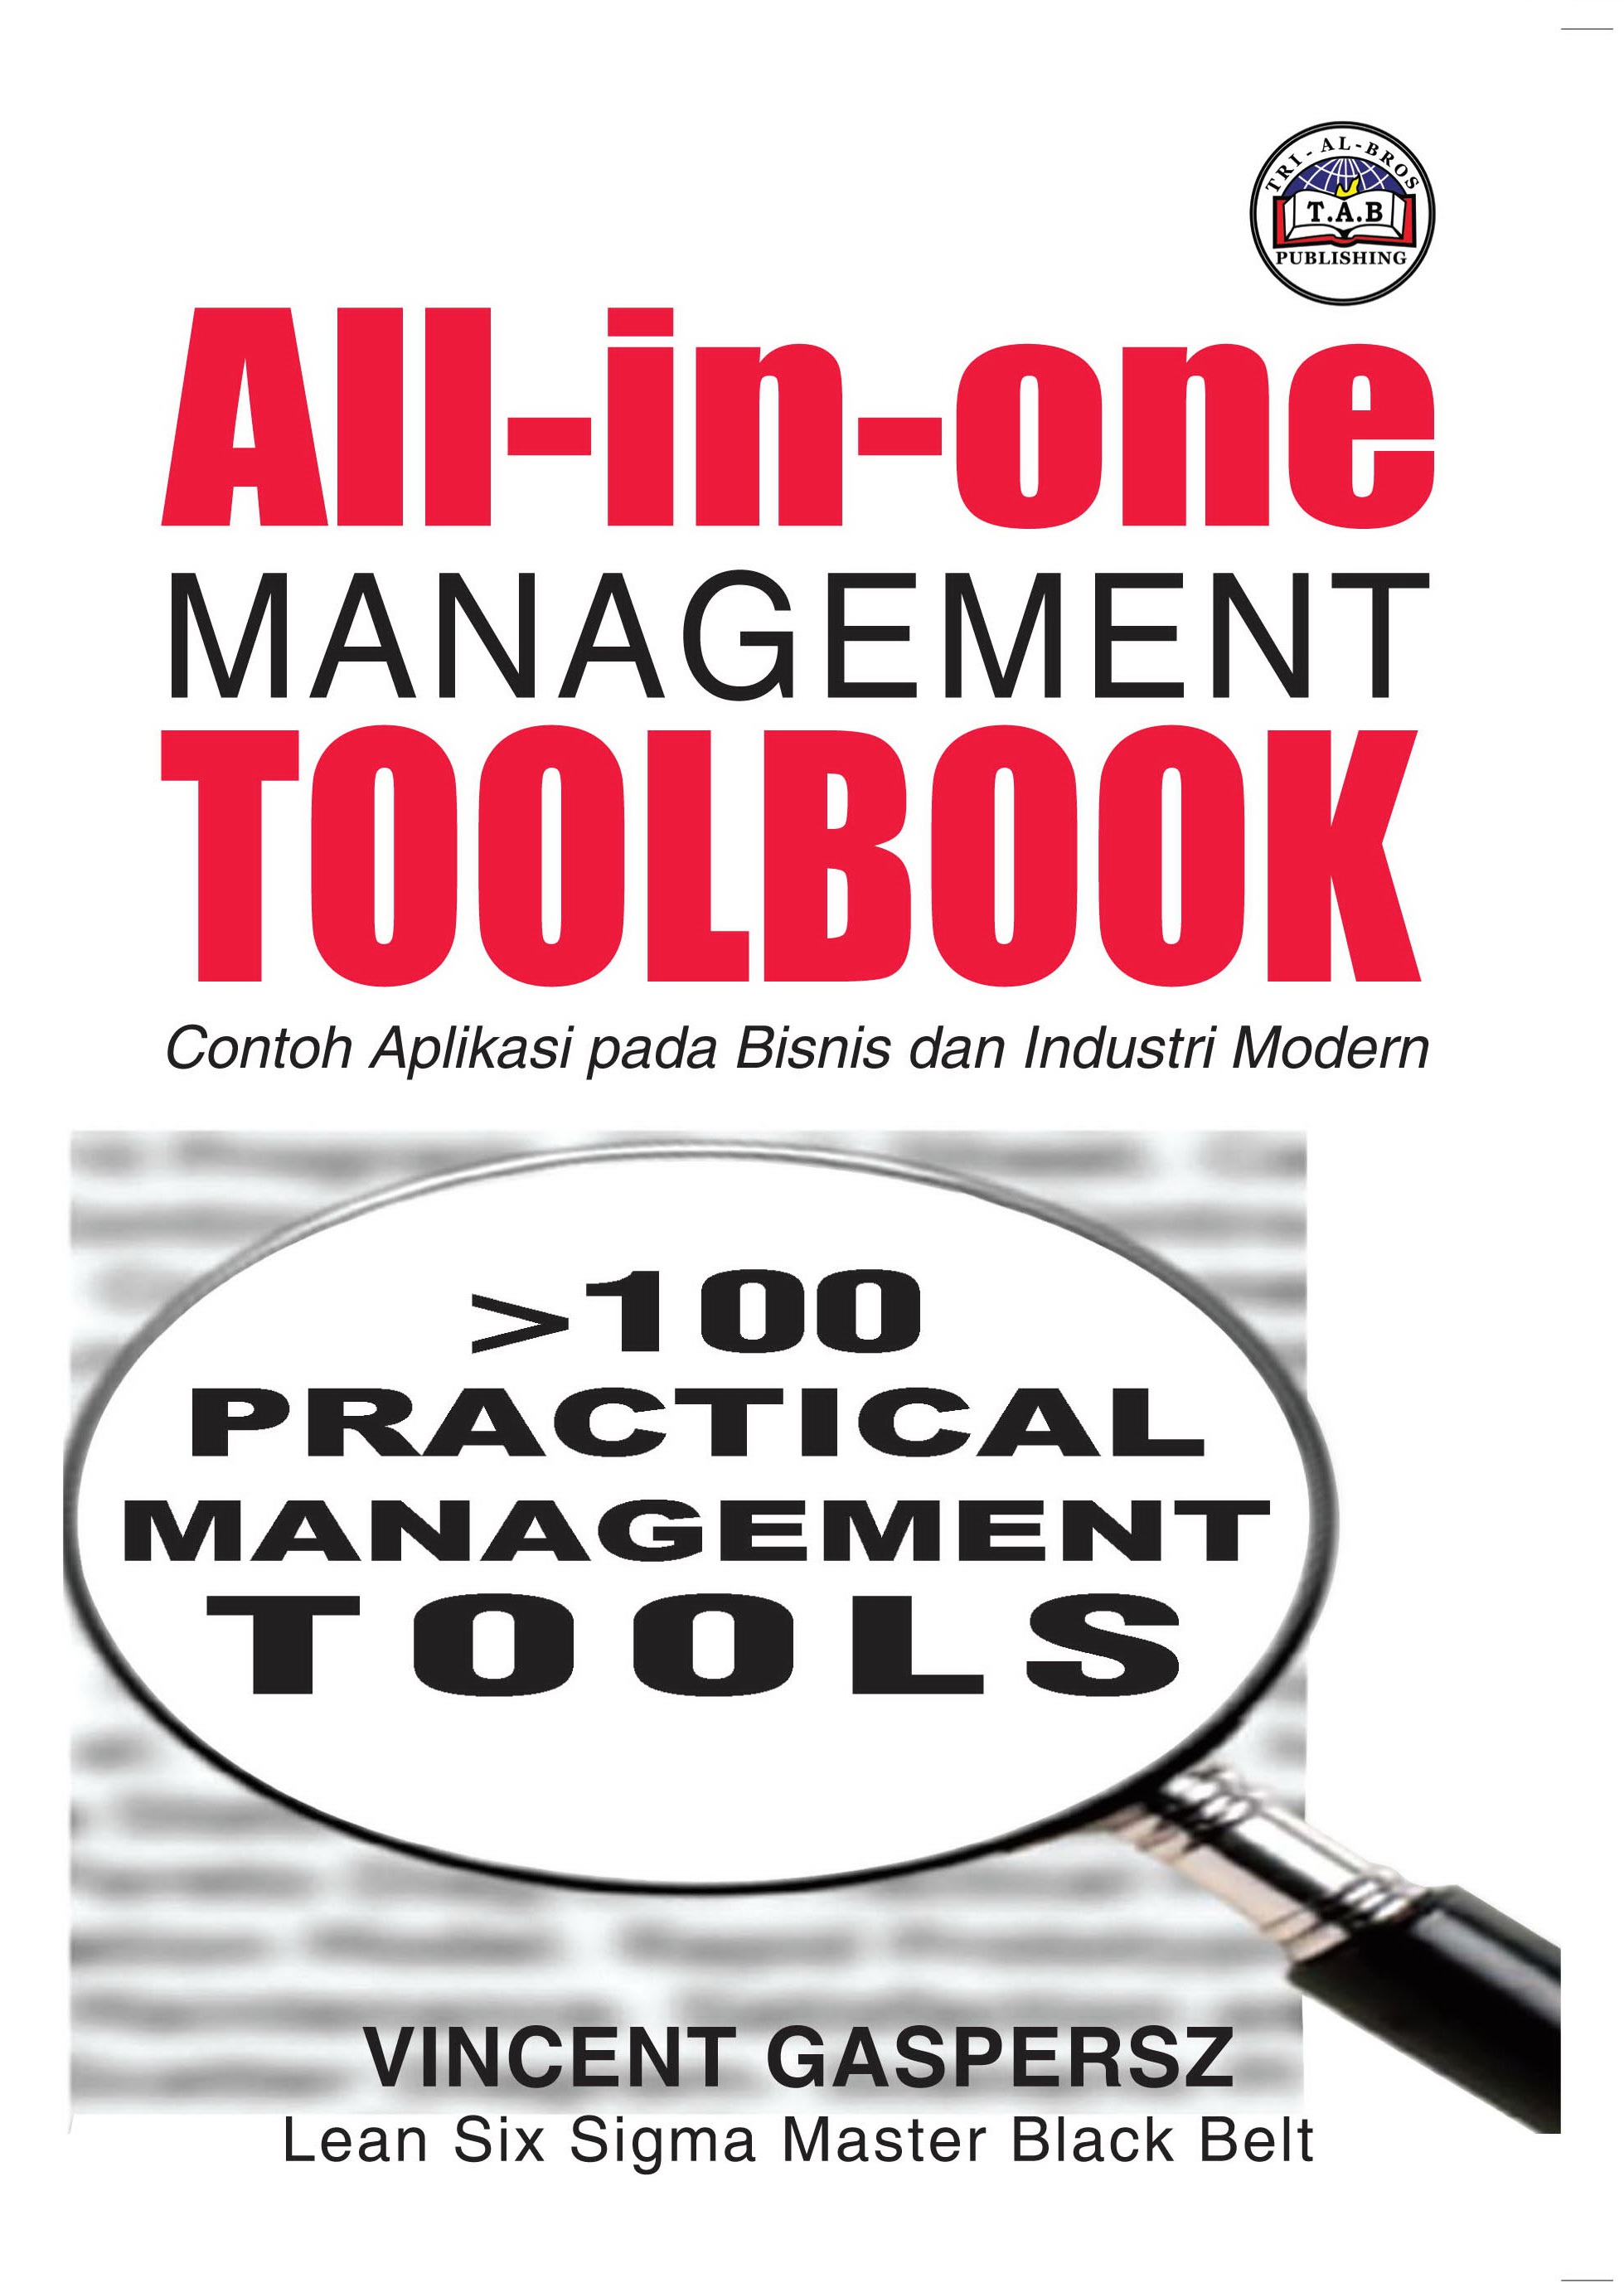 2012 All-in-One Management Toolbook Contoh Aplikasi pada Bisnis dan Industri Modern VG